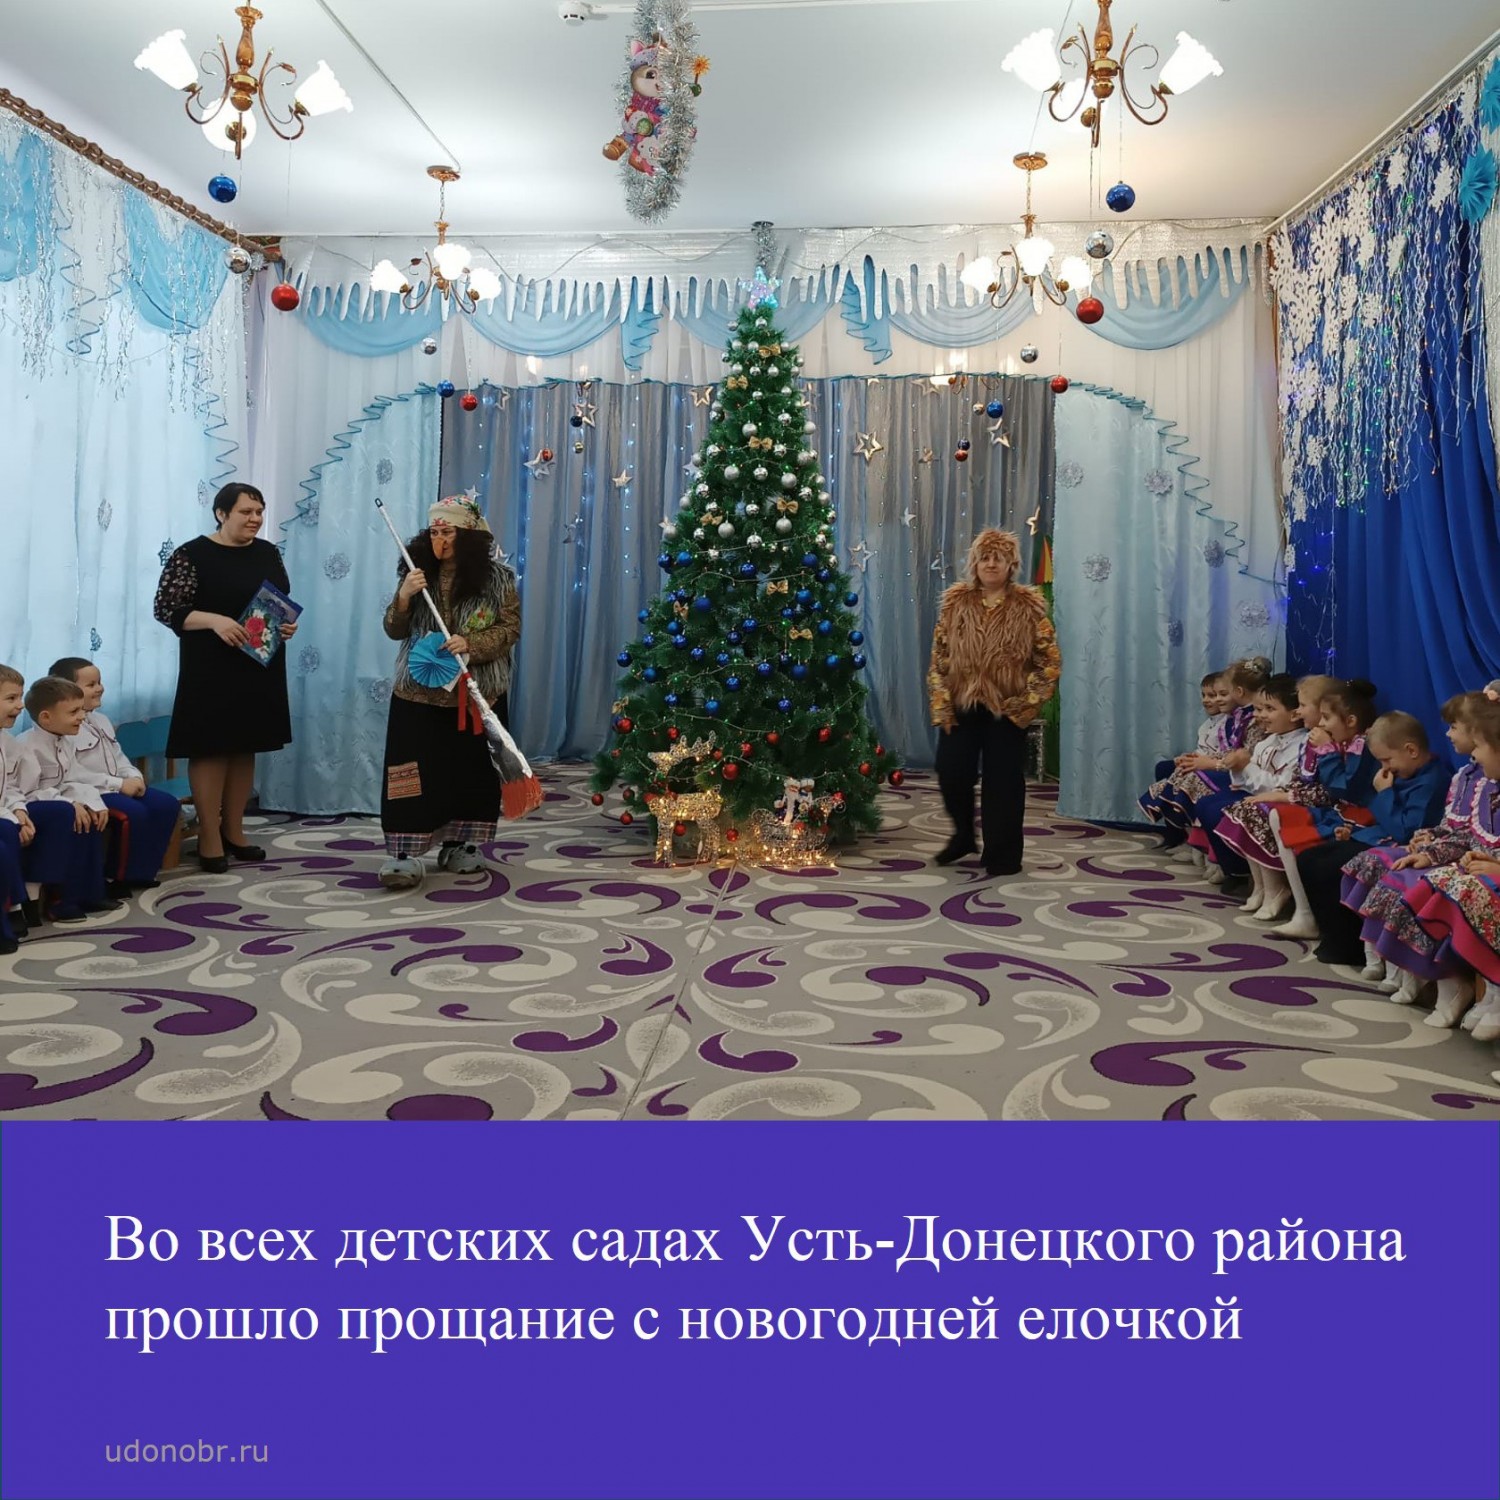 Во всех садах Усть-Донецкого района прошло прощание с новогодней елочкой